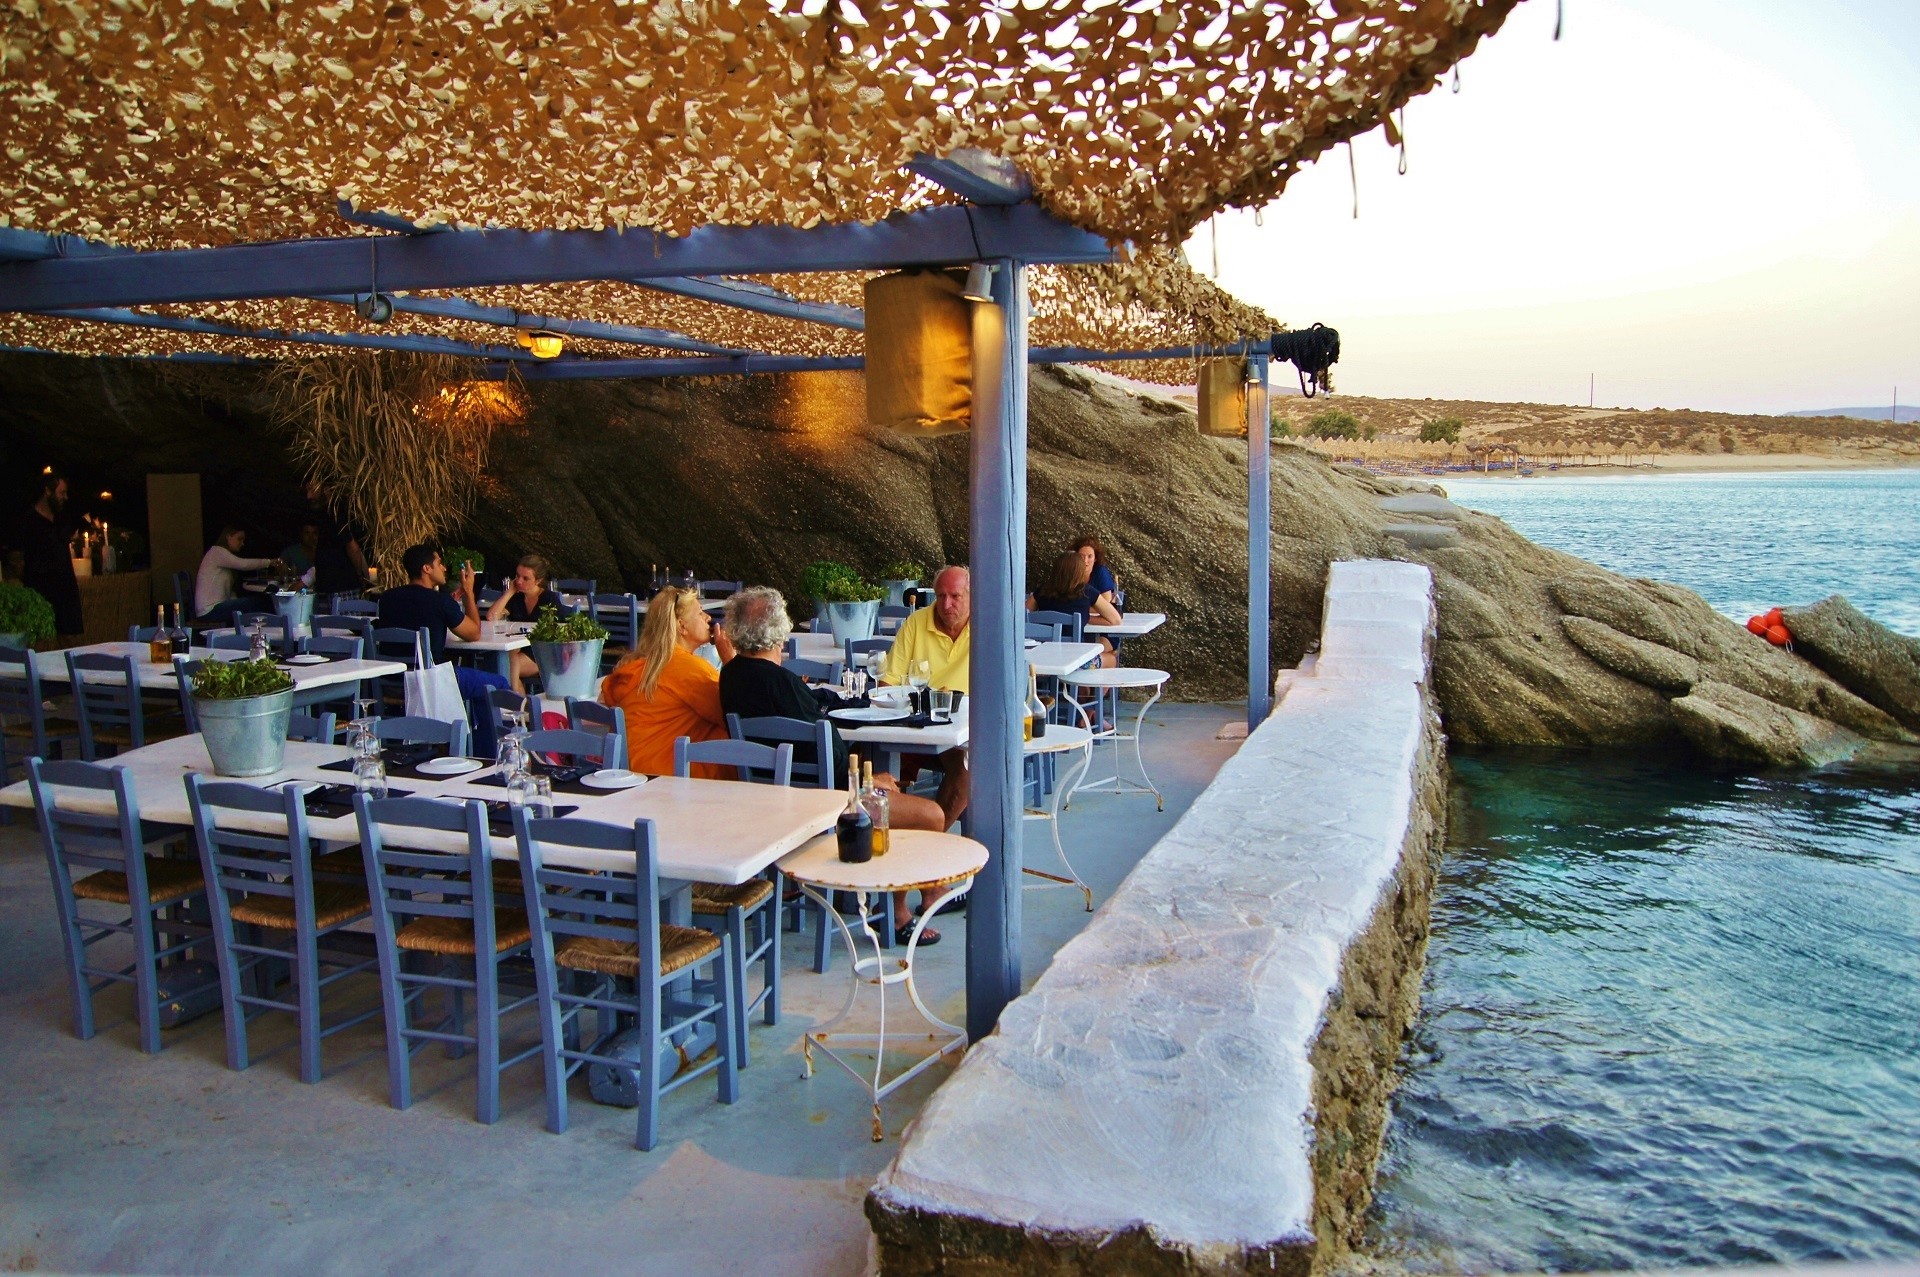 restauracja w jaskini przy morzu ze stolikami, przy których siedzą ludzie